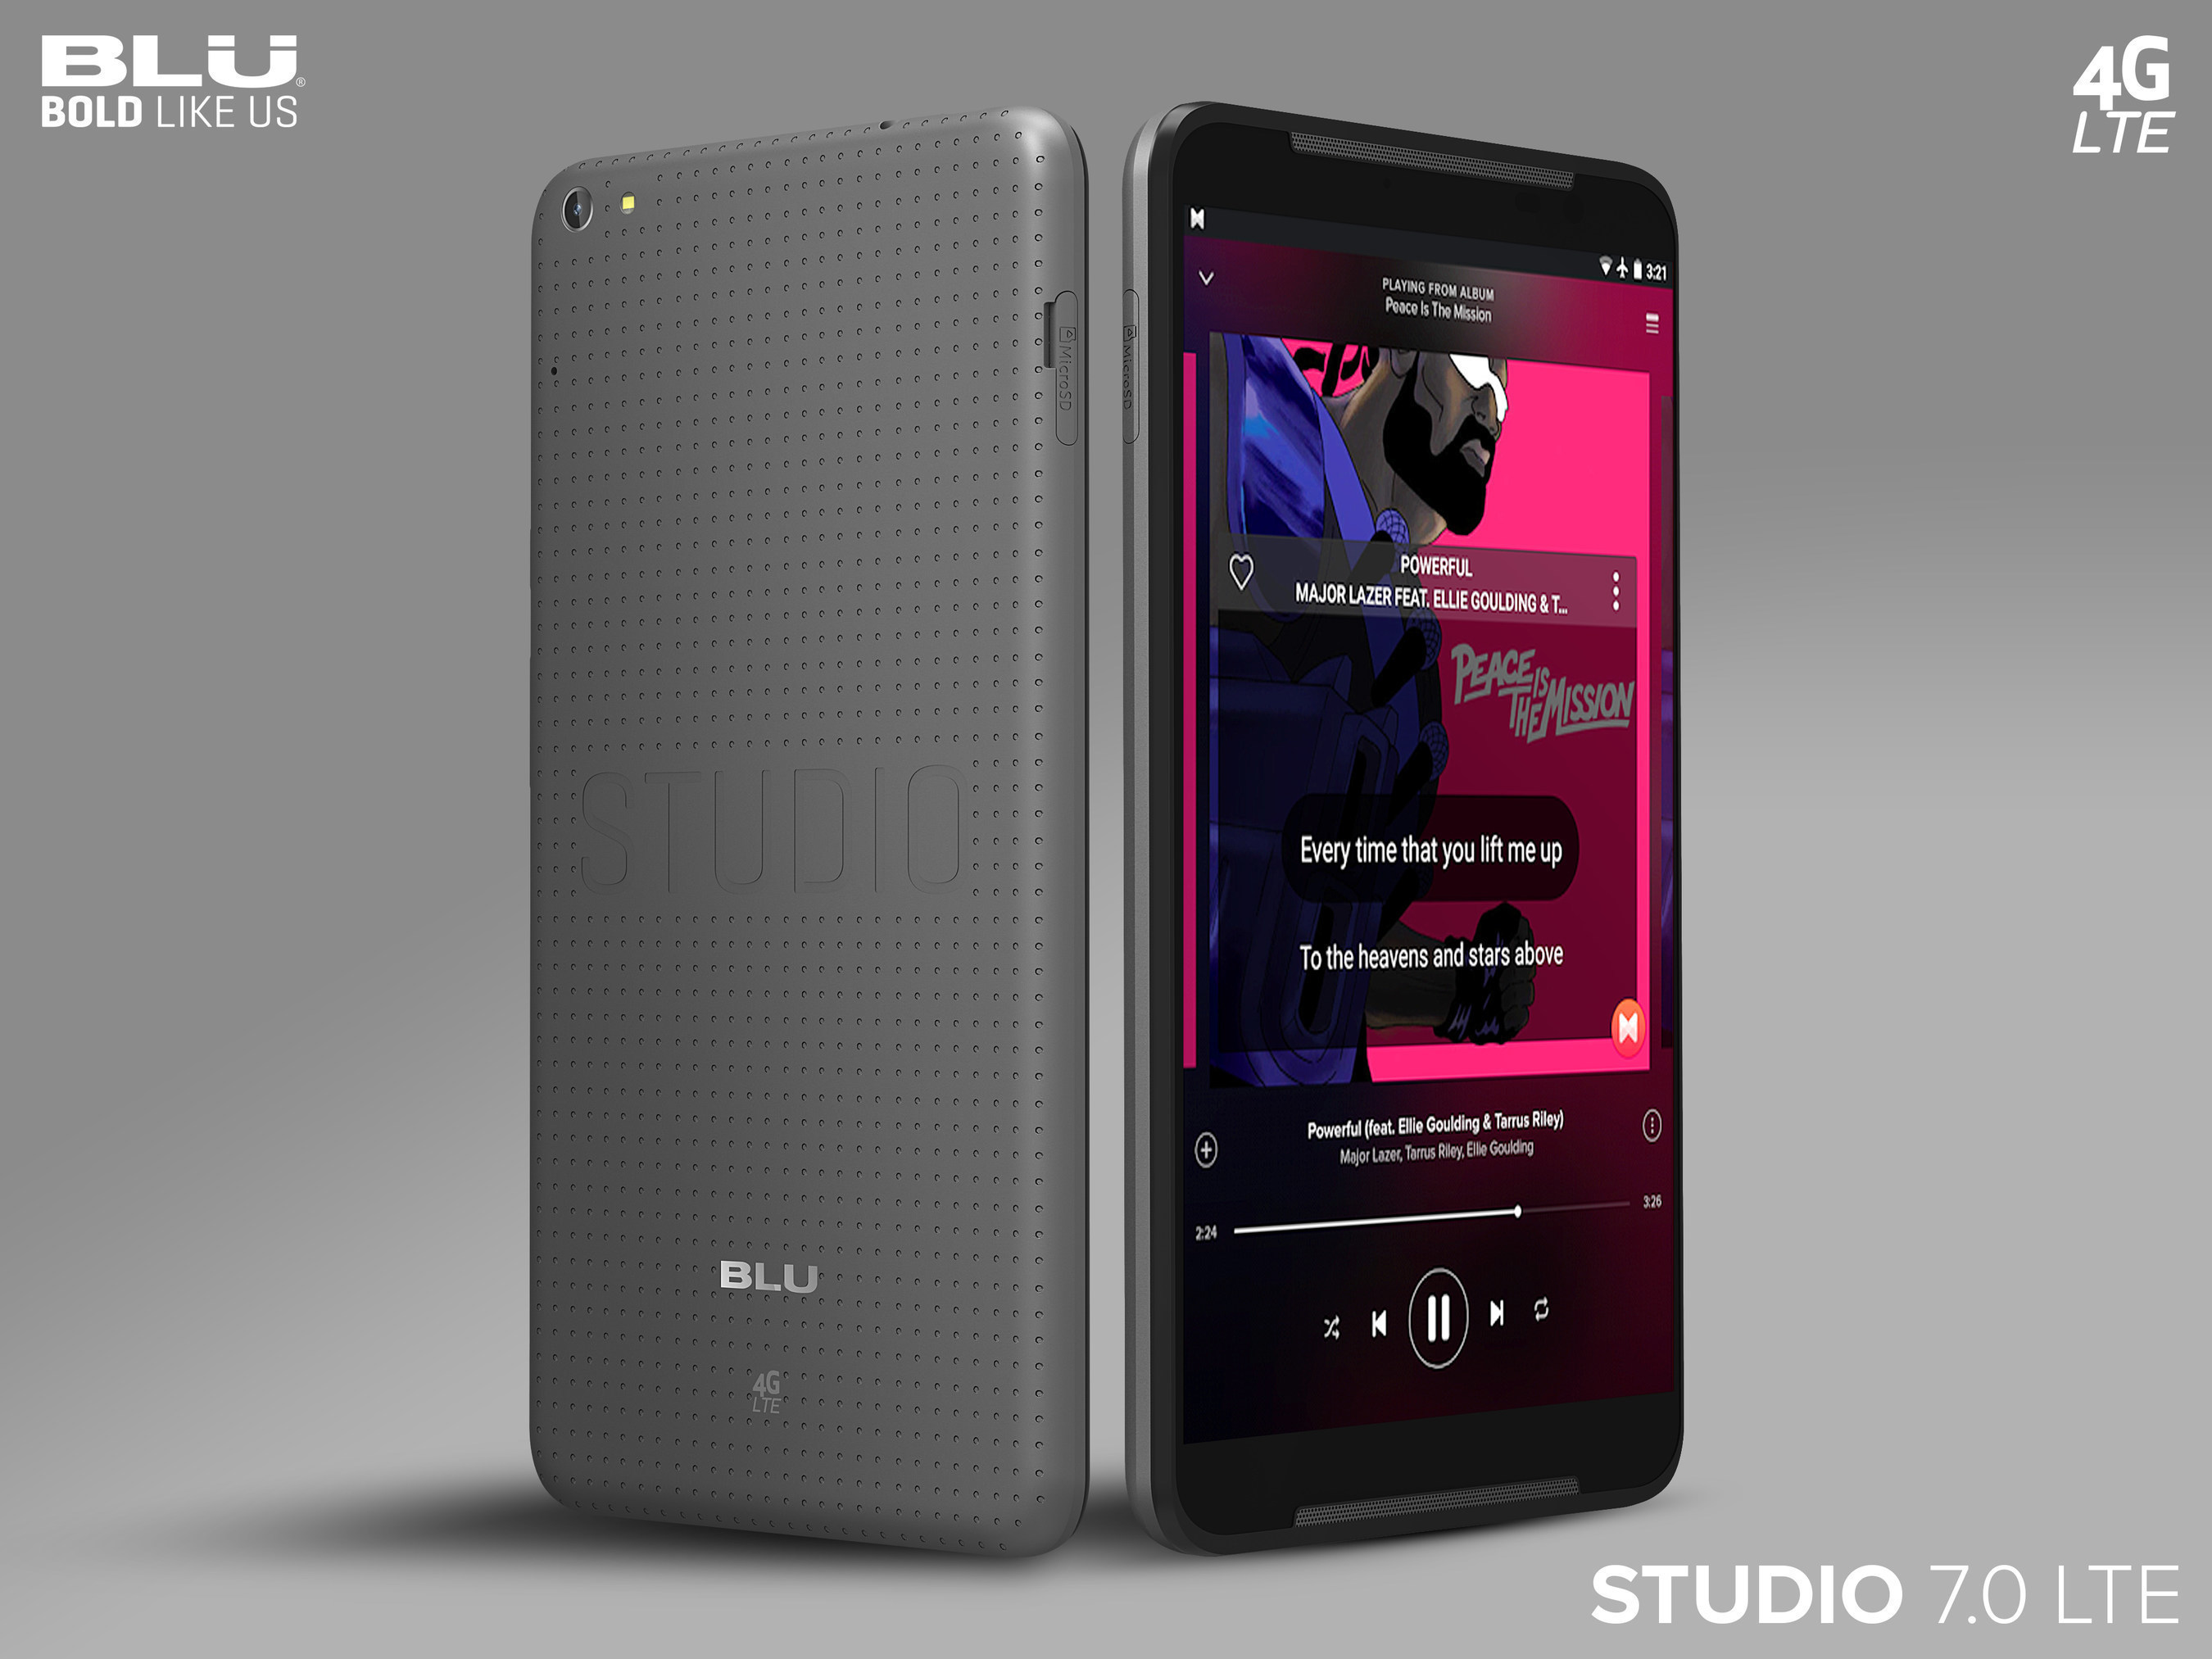 BLU Studio 7.0 LTE